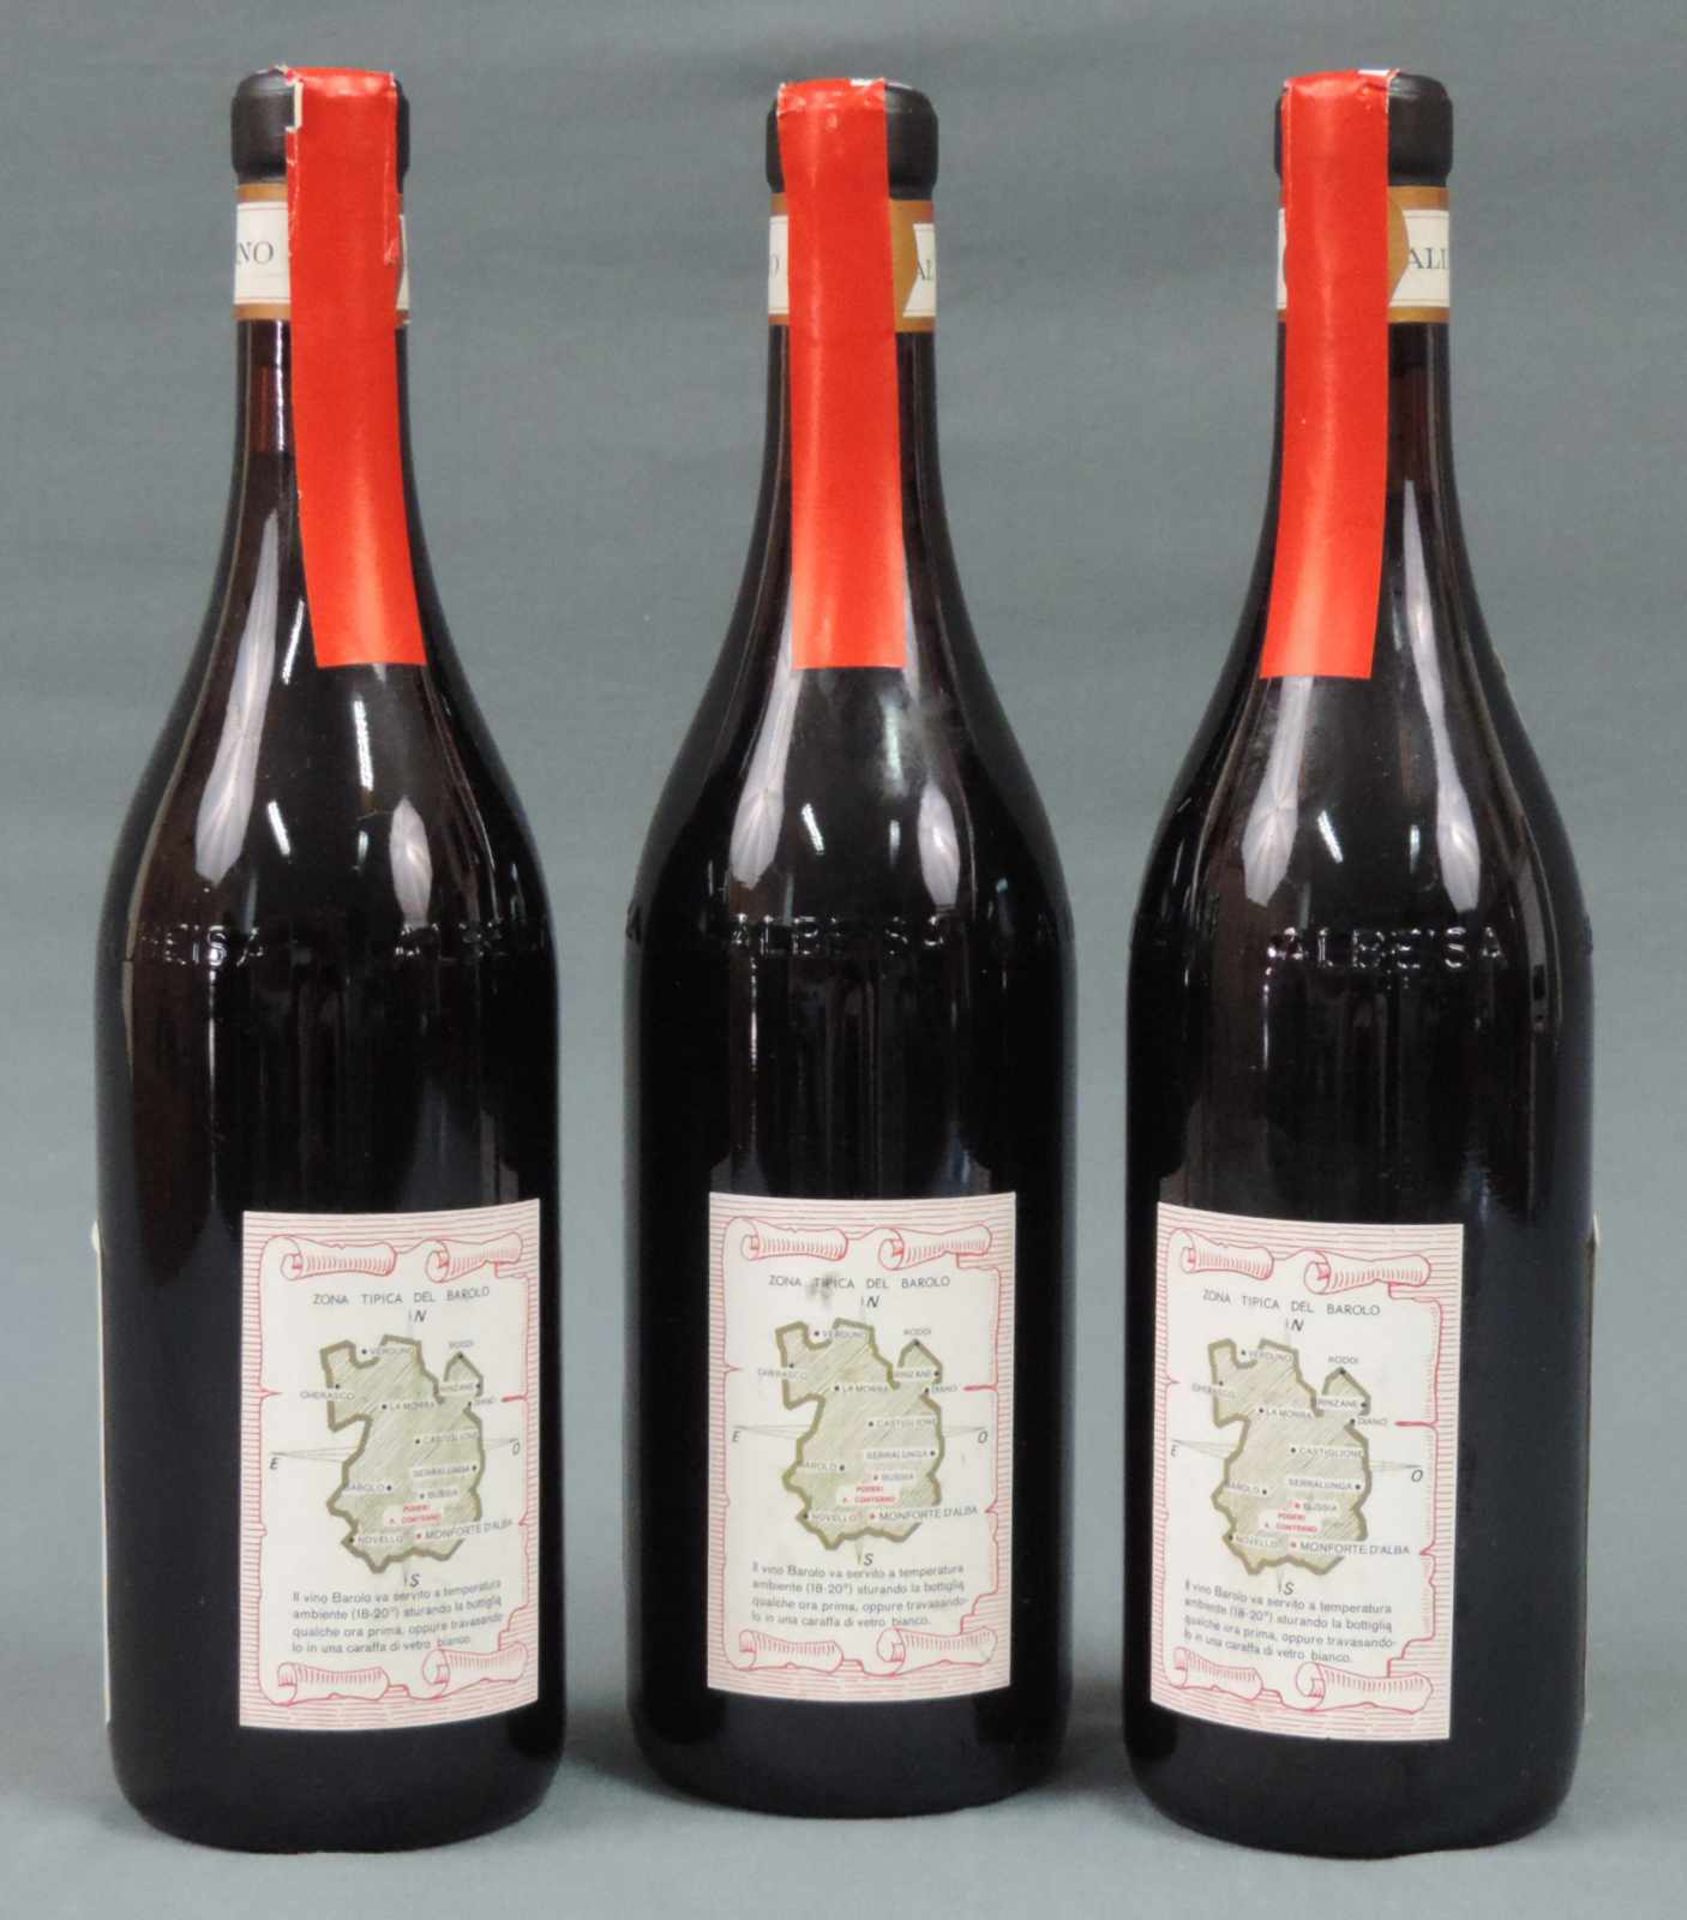 1982 Barolo, DOCG, Italien. Rotwein. 3 ganze Flaschen. 75 cl. 13,5 % Vol. Gute Erscheinung. 1982 - Bild 2 aus 6